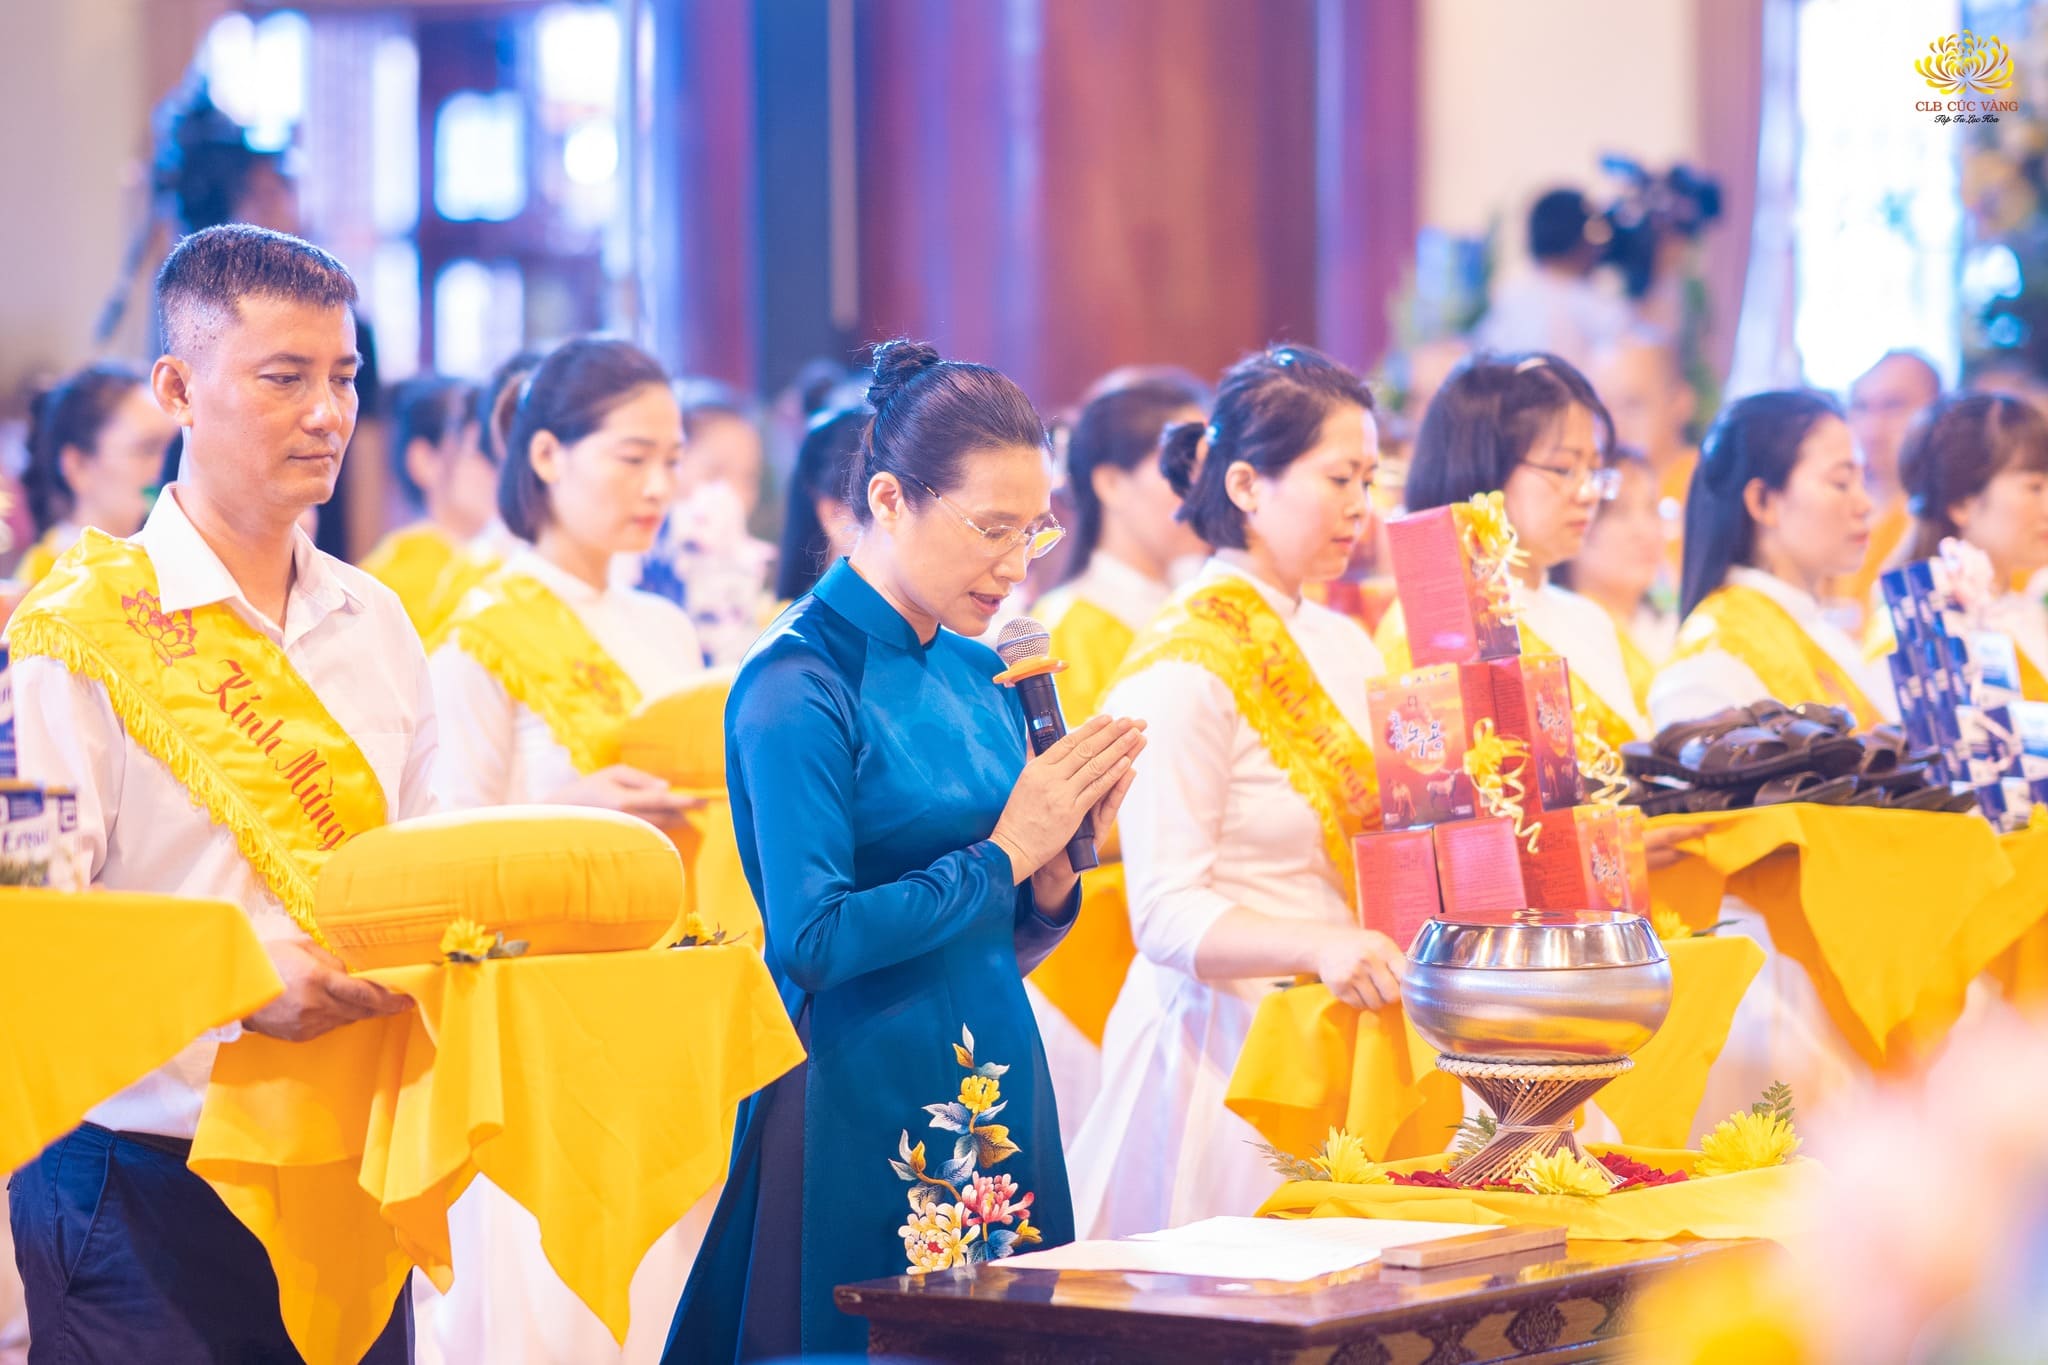 Đại diện cho nhân dân Phật tử và các Phật tử trong CLB Cúc Vàng, Cô Phạm Thị Yến dâng lời tác bạch trong buổi lễ